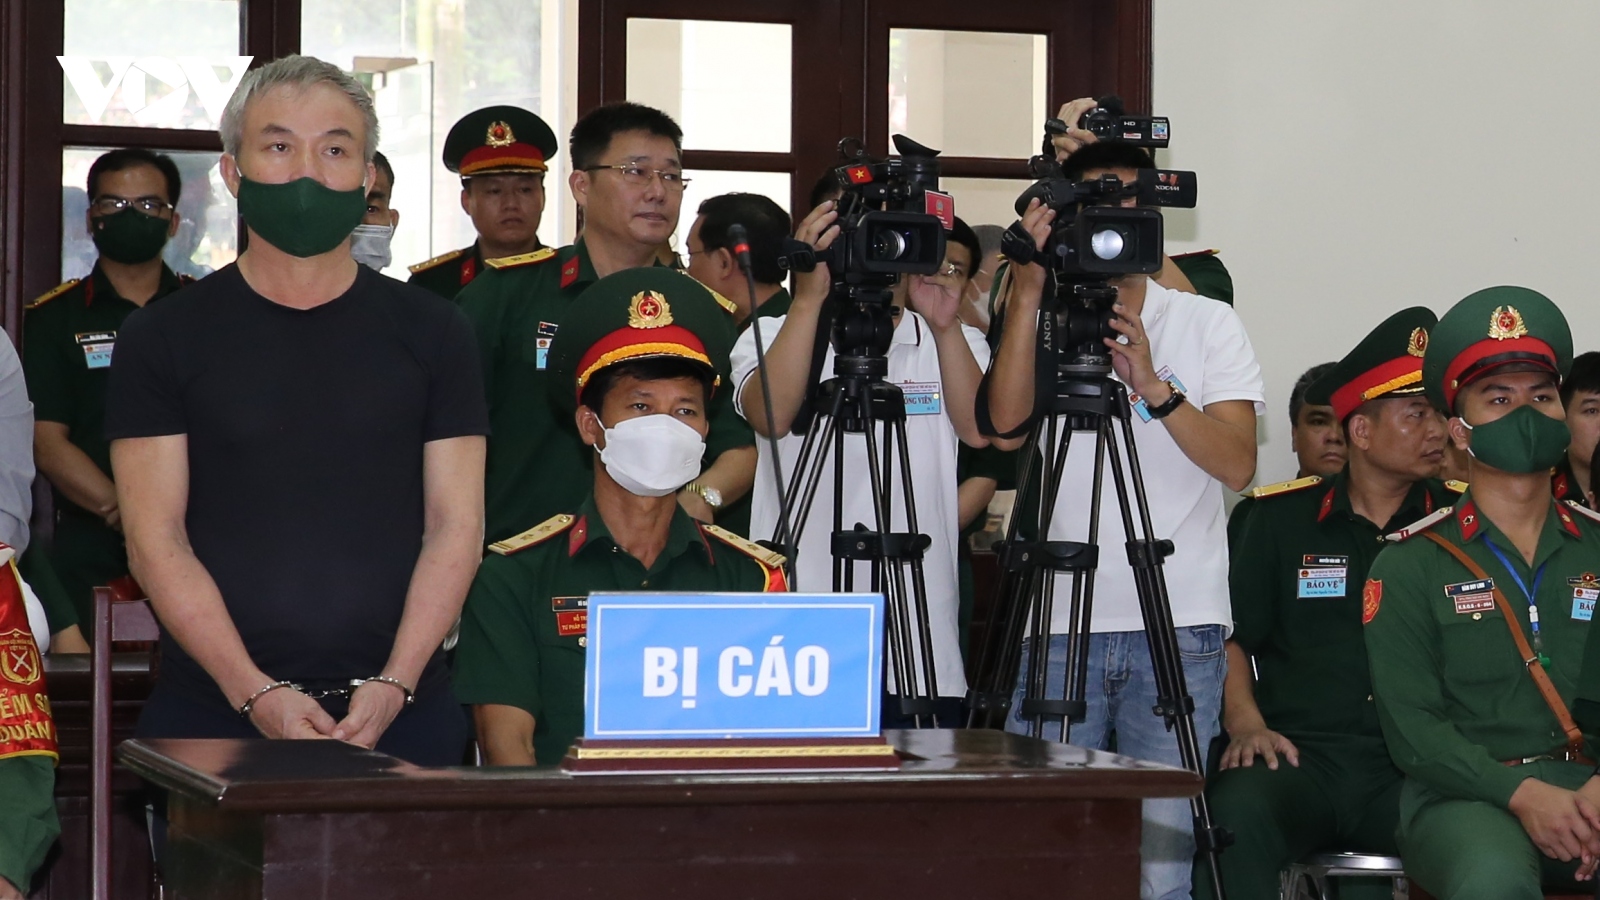 "Trùm buôn lậu" khai chi đậm cho cựu Thiếu tướng Lê Văn Minh đi đánh golf